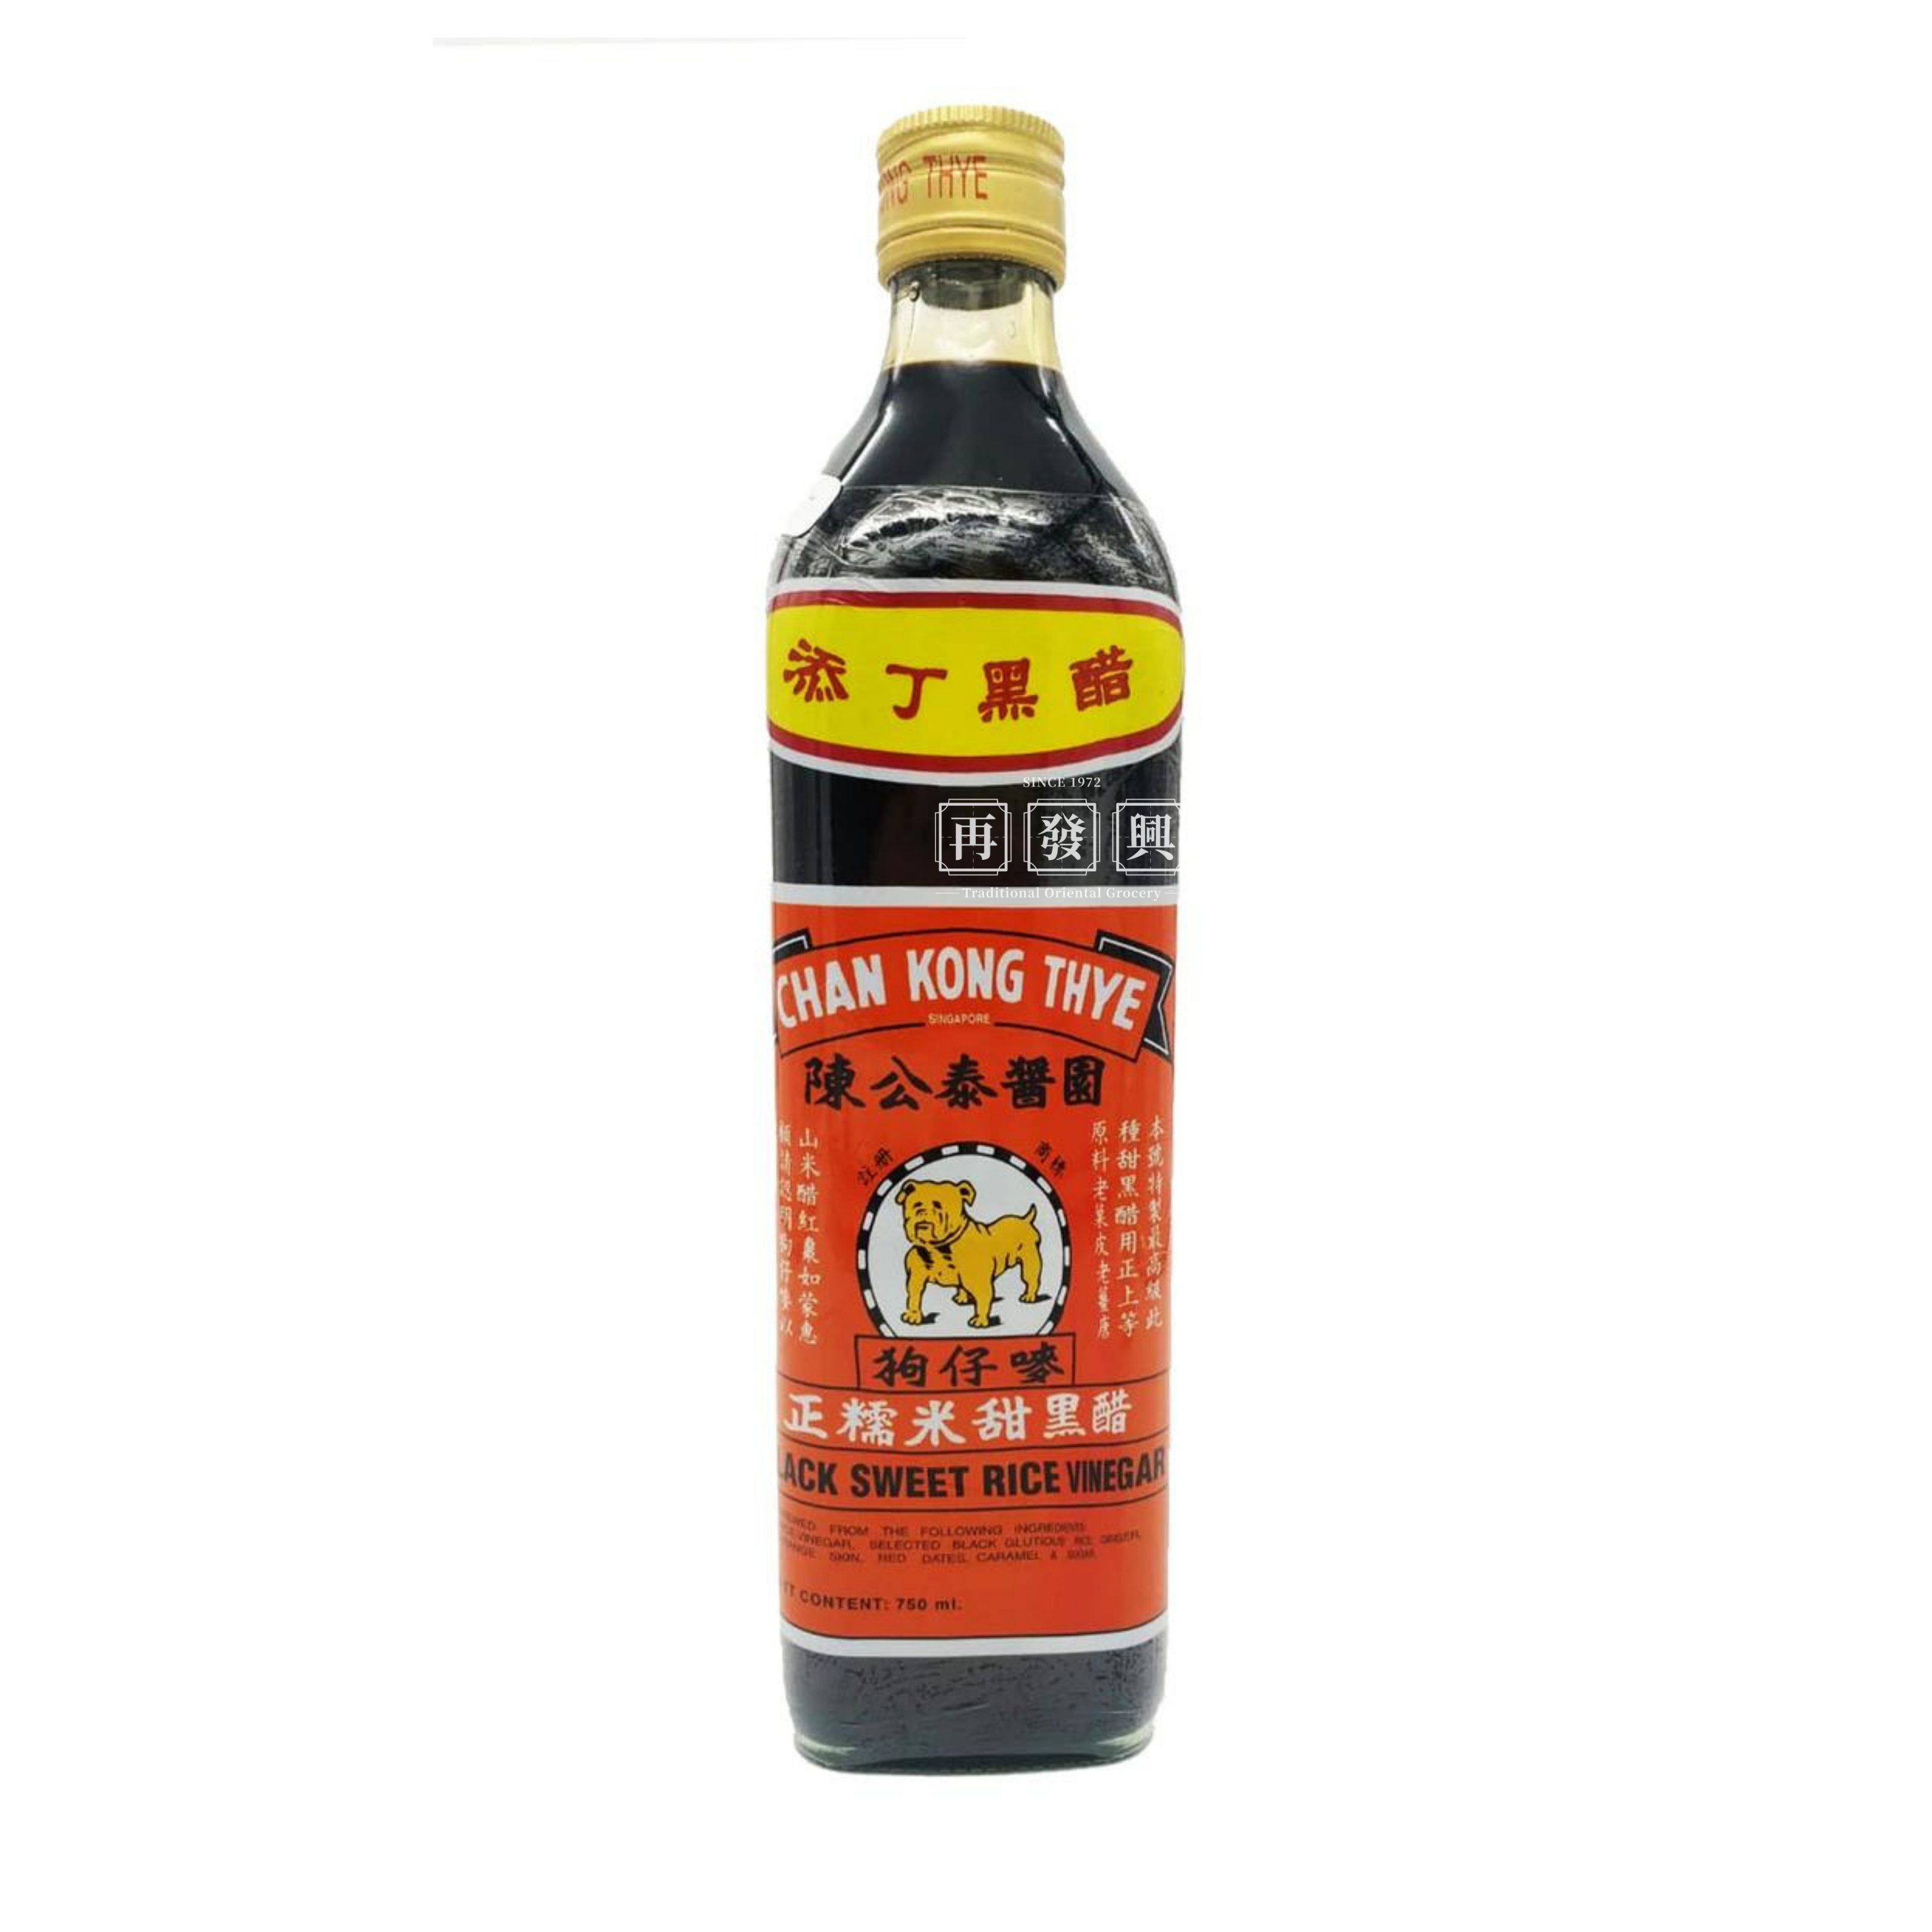 Chan Kong Thye Singapore Black Vinegar 750ml